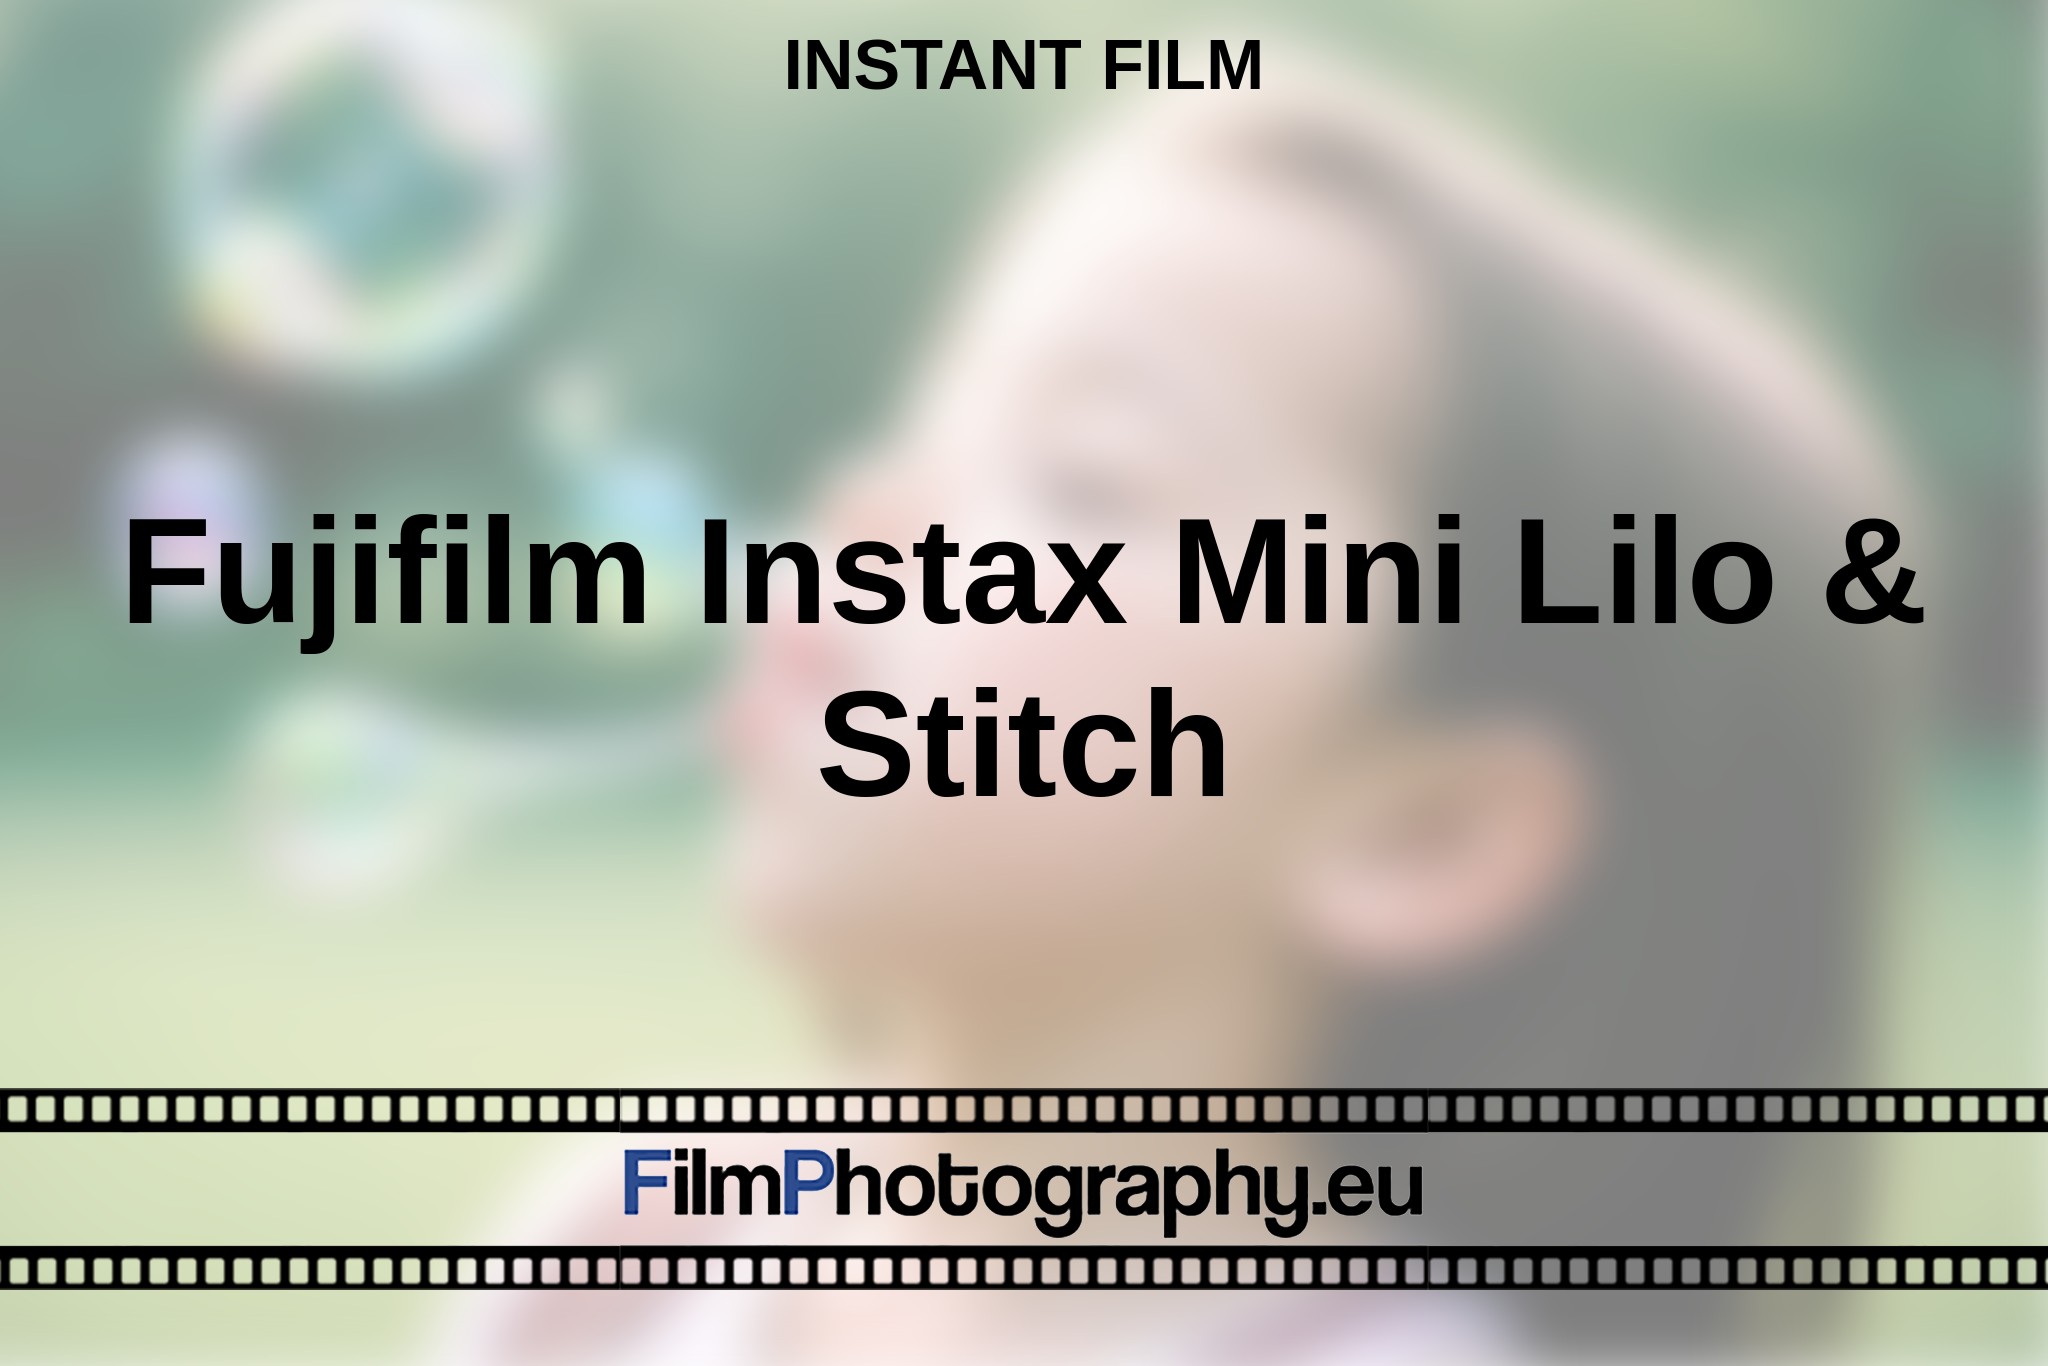 fujifilm-instax-mini-lilo-stitch-instant-film-bnv.jpg